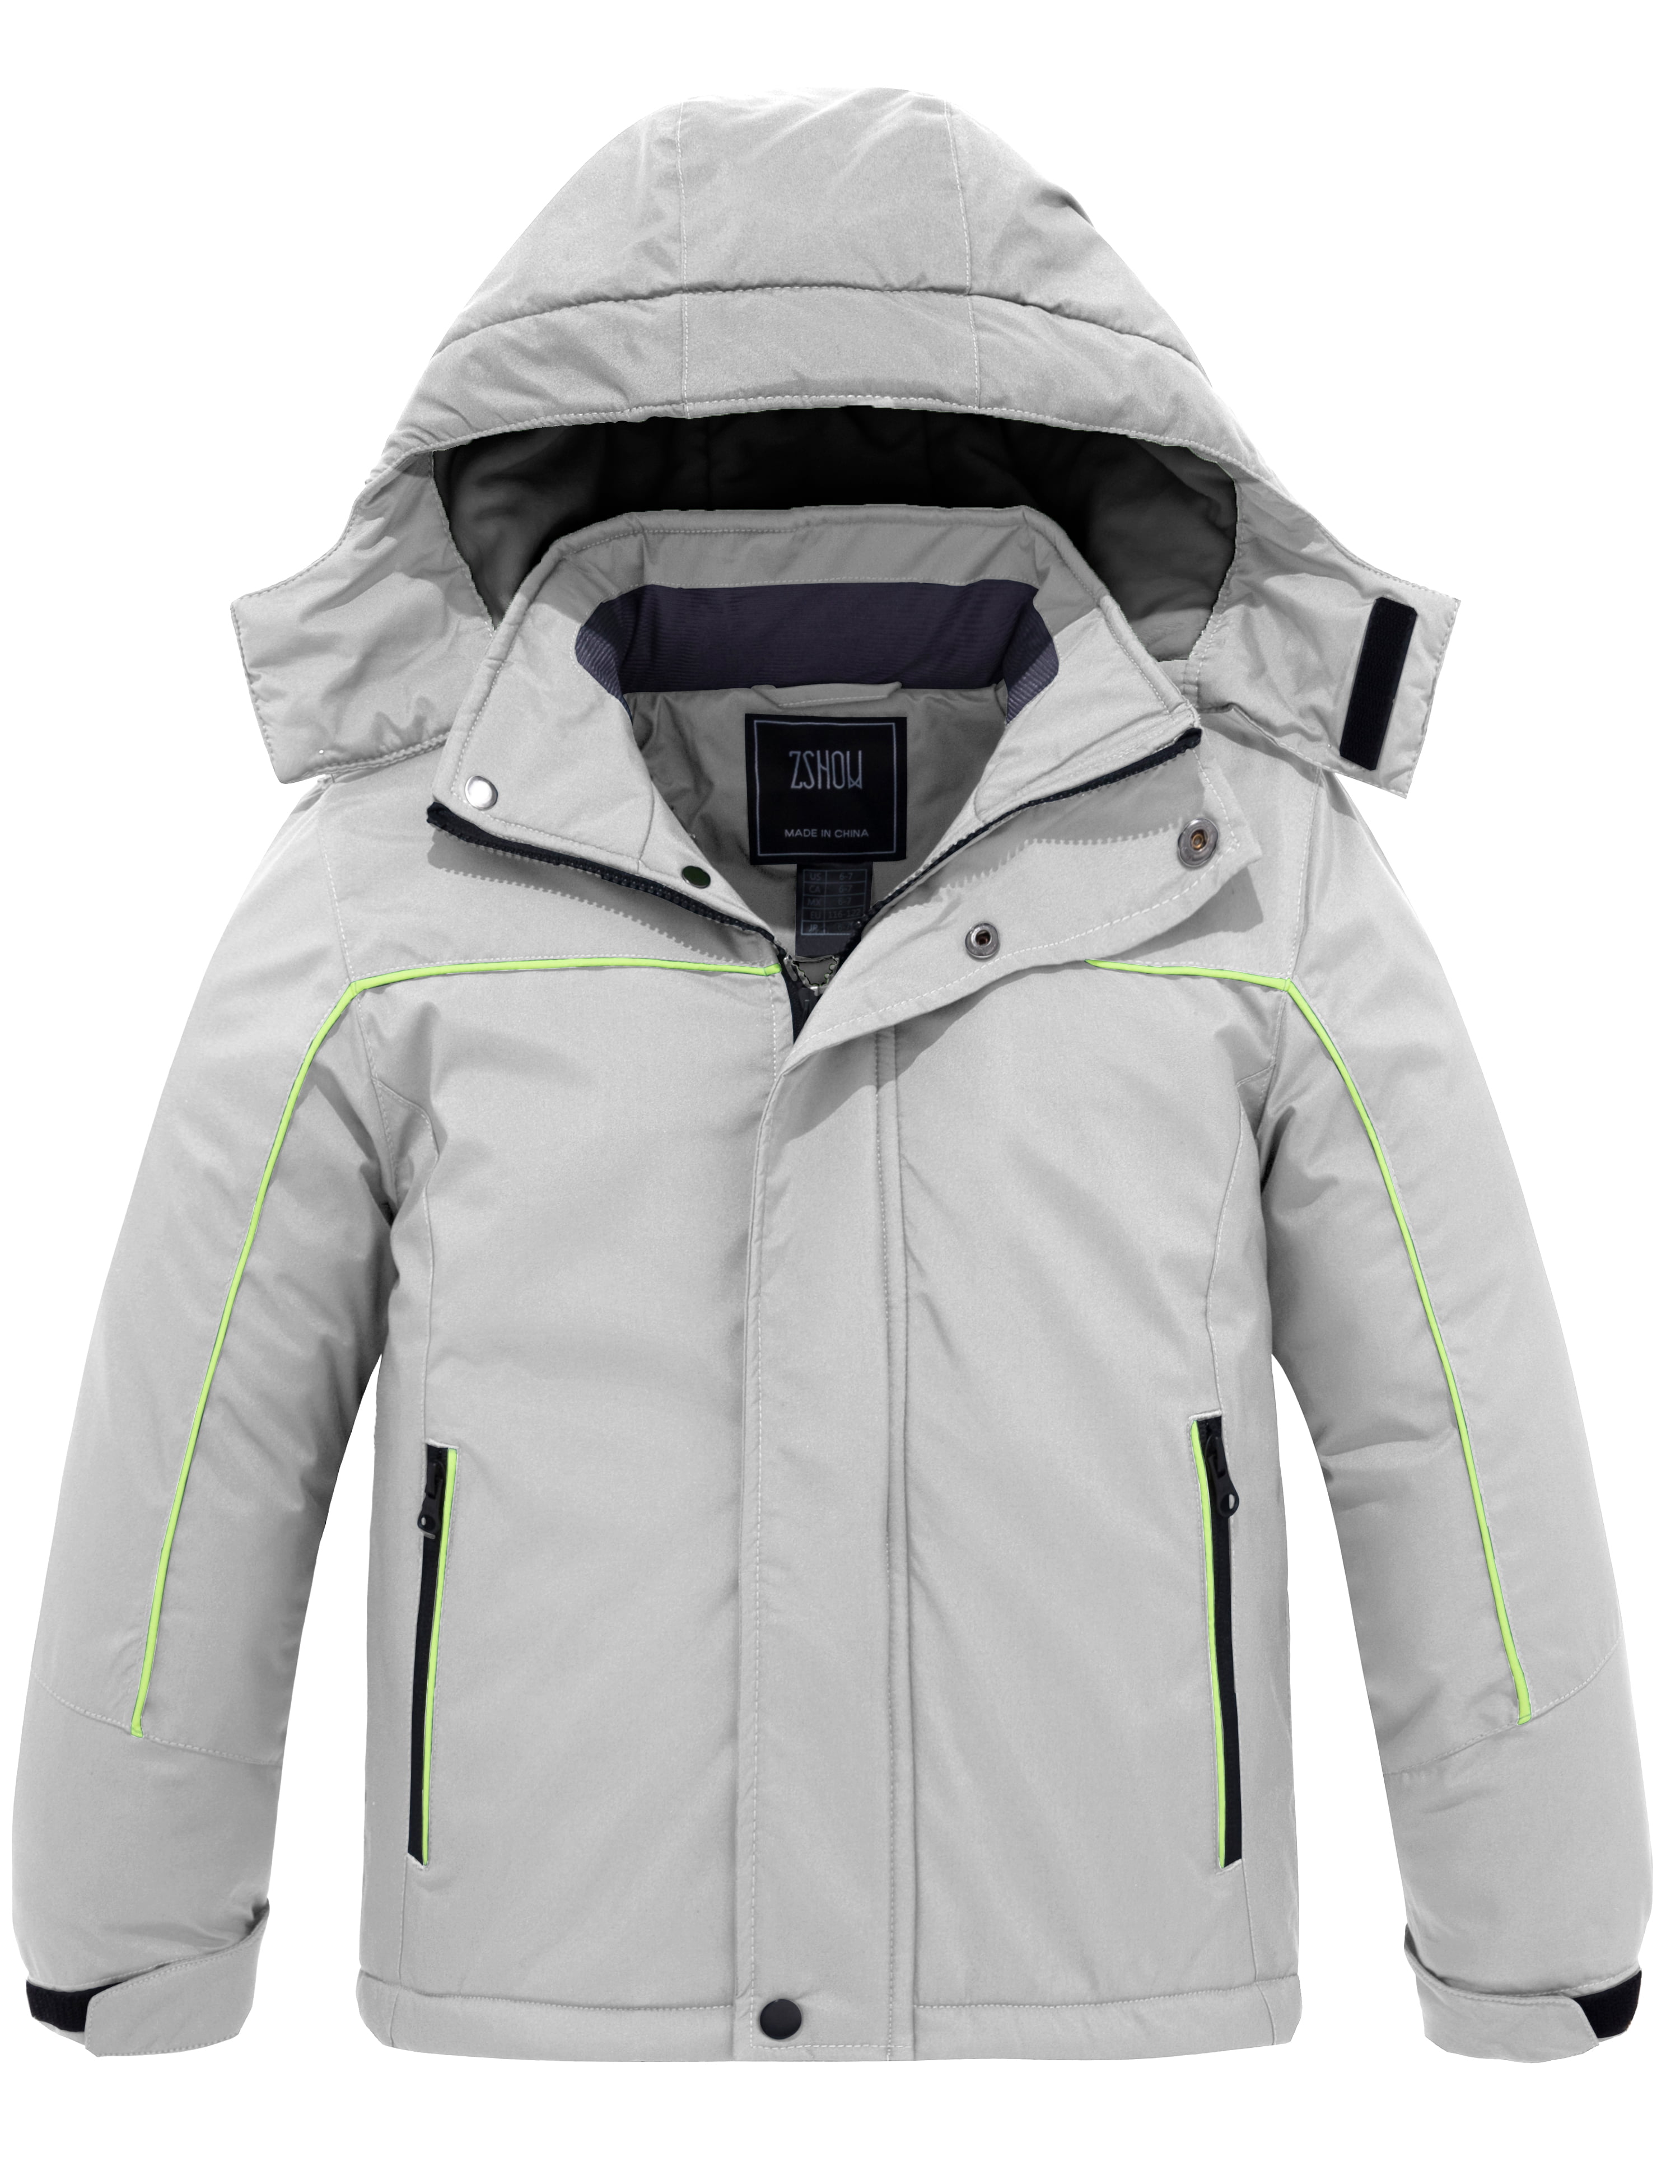 ZSHOW Boys' Warm Winter Coat Waterproof Parka Hooded Puffer Jacket 